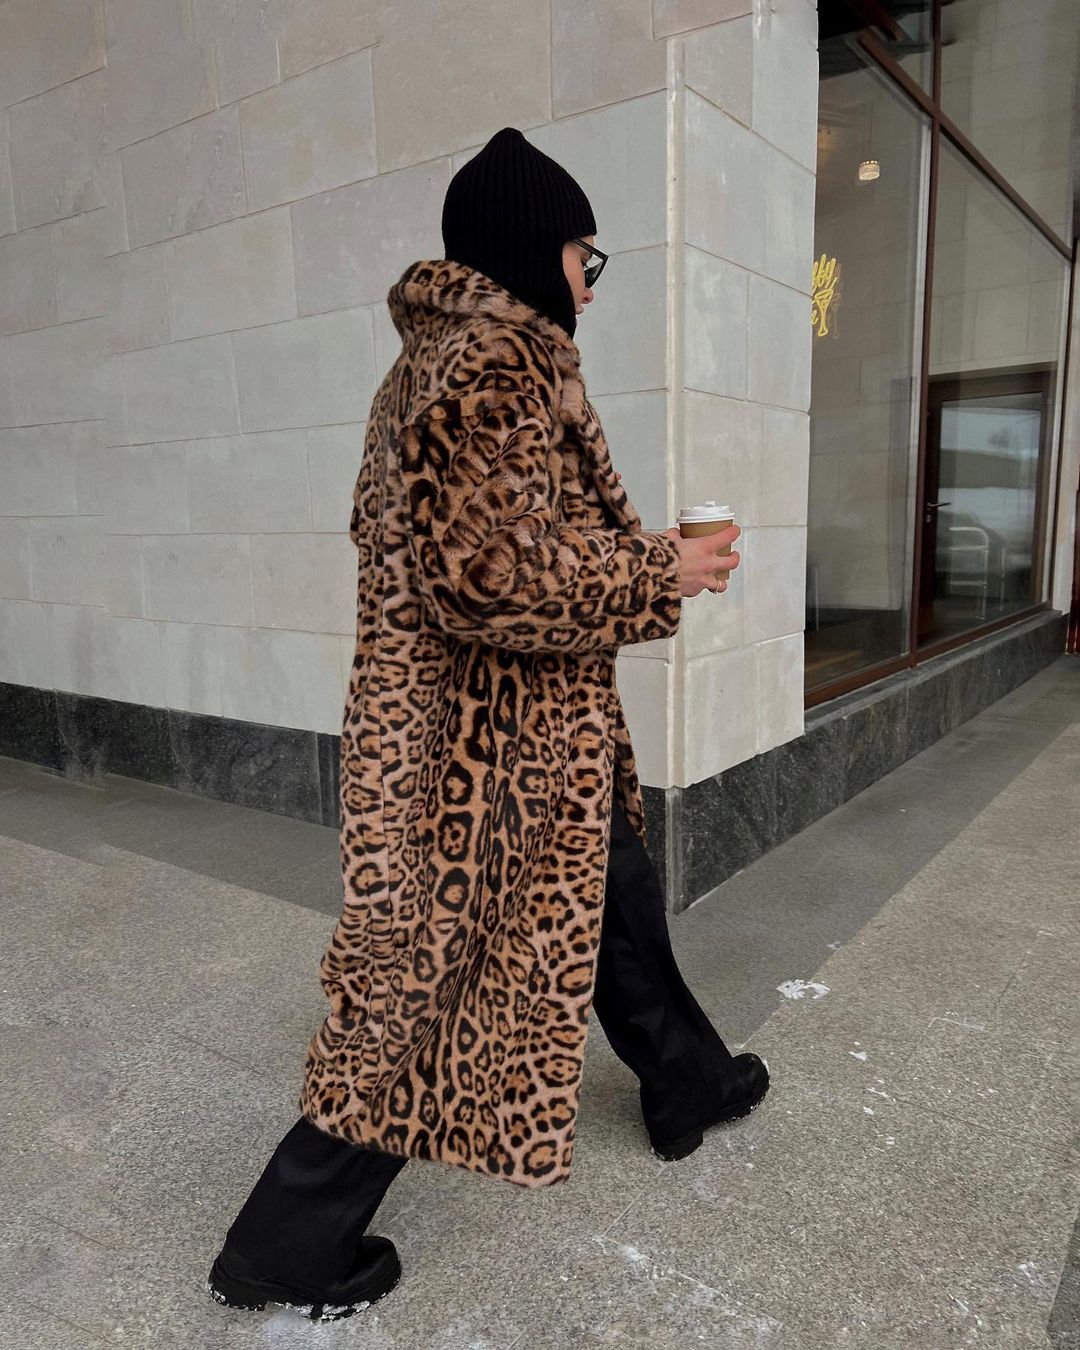 Короткие шорты, черное мини и леопардовая шуба. Эти и другие смелые образы примерили девушки Владимира для демонстрации в своих социальных сетях.